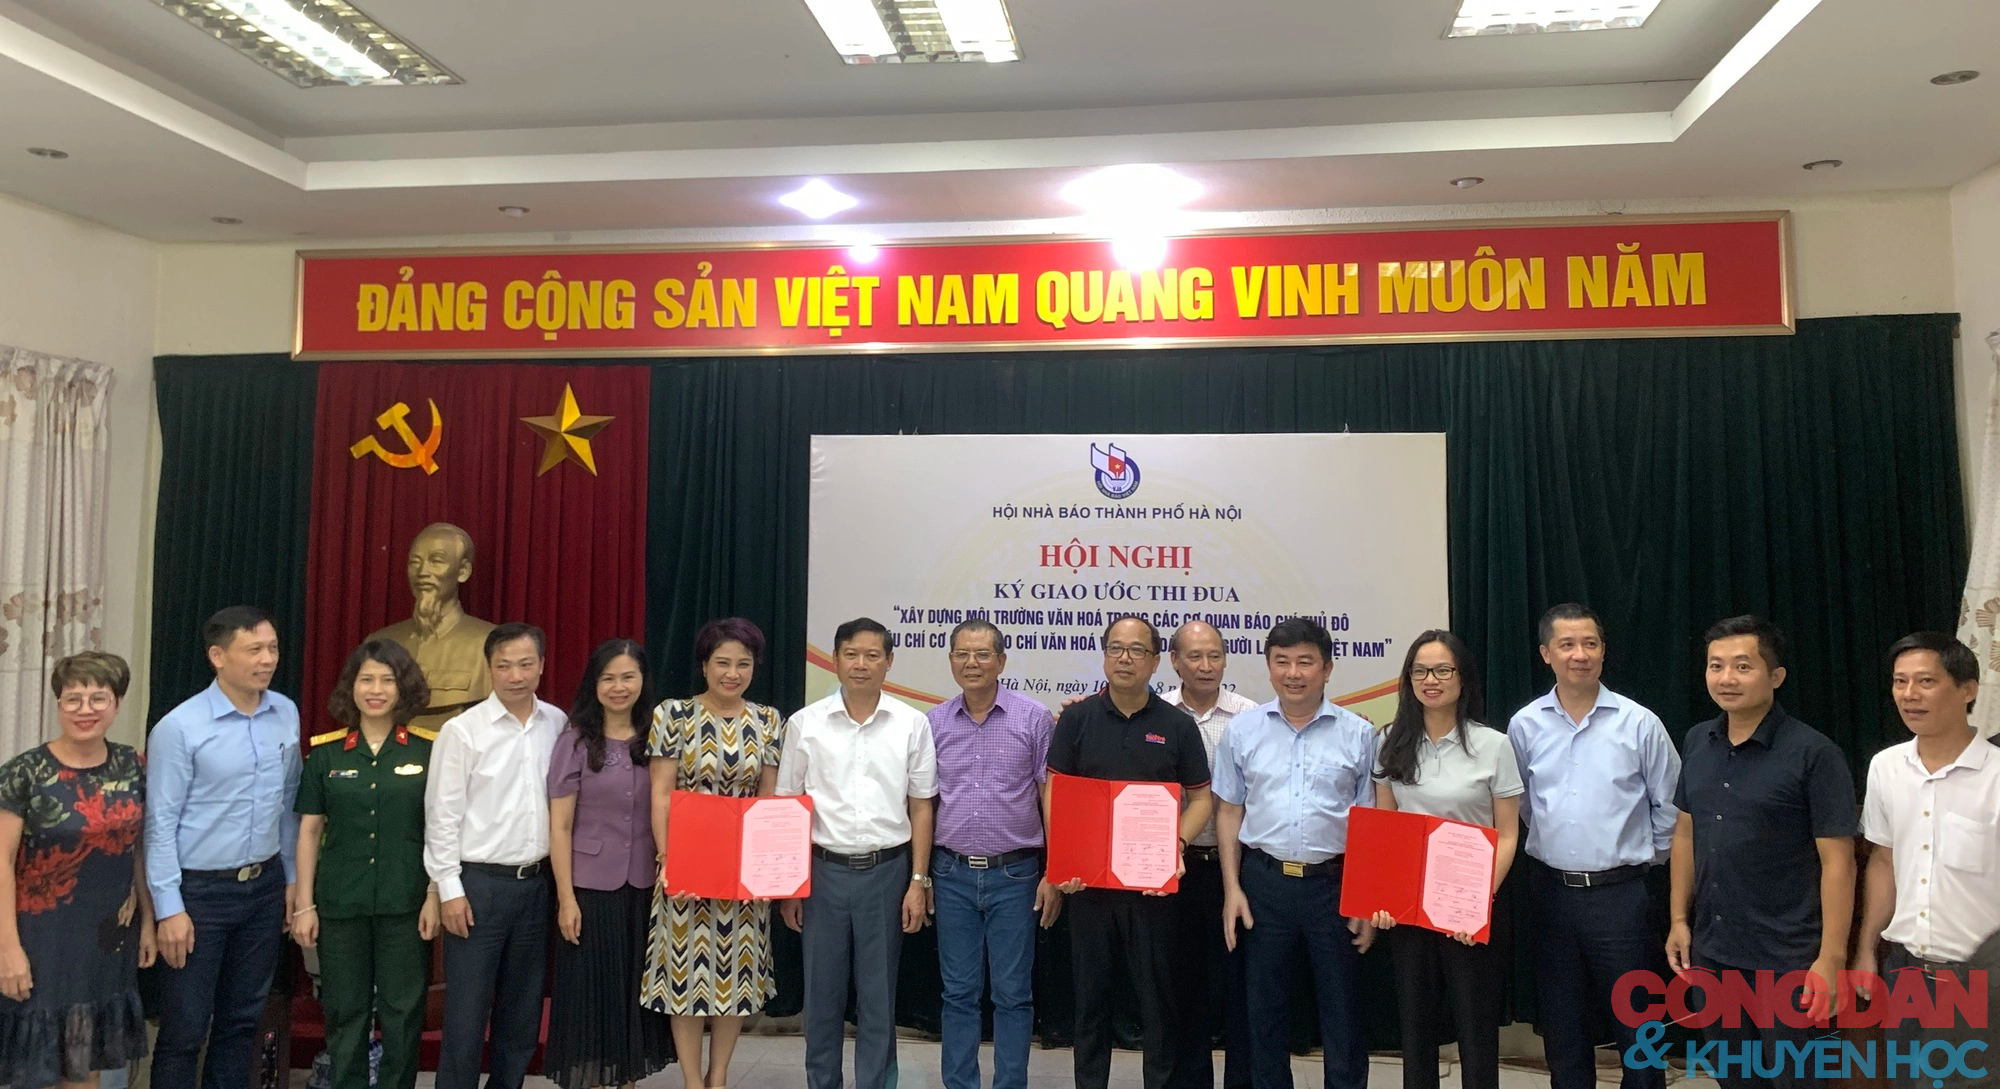 Hà Nội: Xây dựng môi trường văn hóa trong các cơ quan báo chí thủ đô và văn hóa của người làm báo Việt Nam - Ảnh 9.